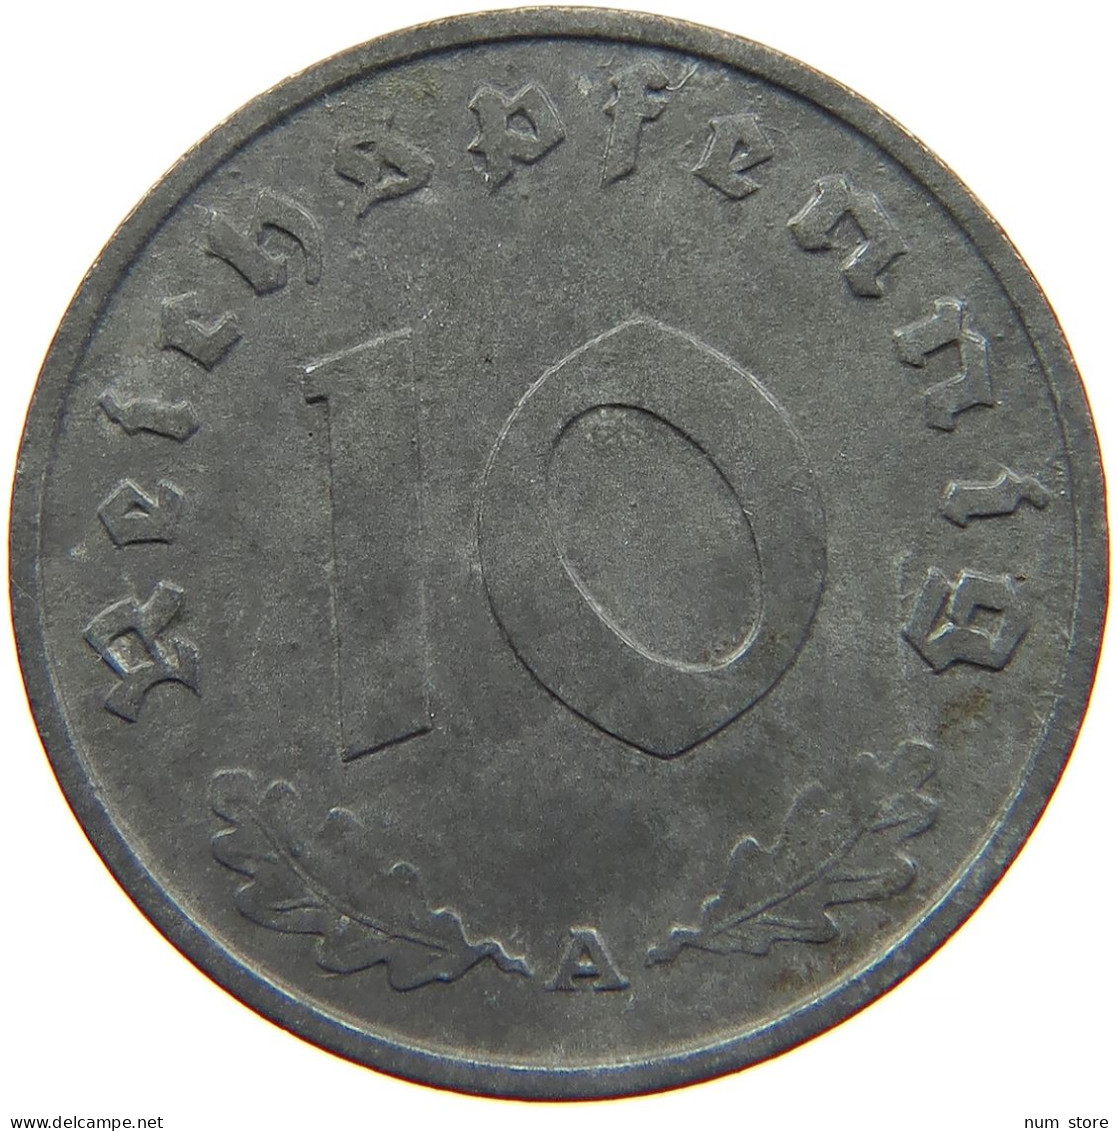 GERMANY 10 REICHSPFENNIG 1943 A #s095 0035 - 10 Reichspfennig